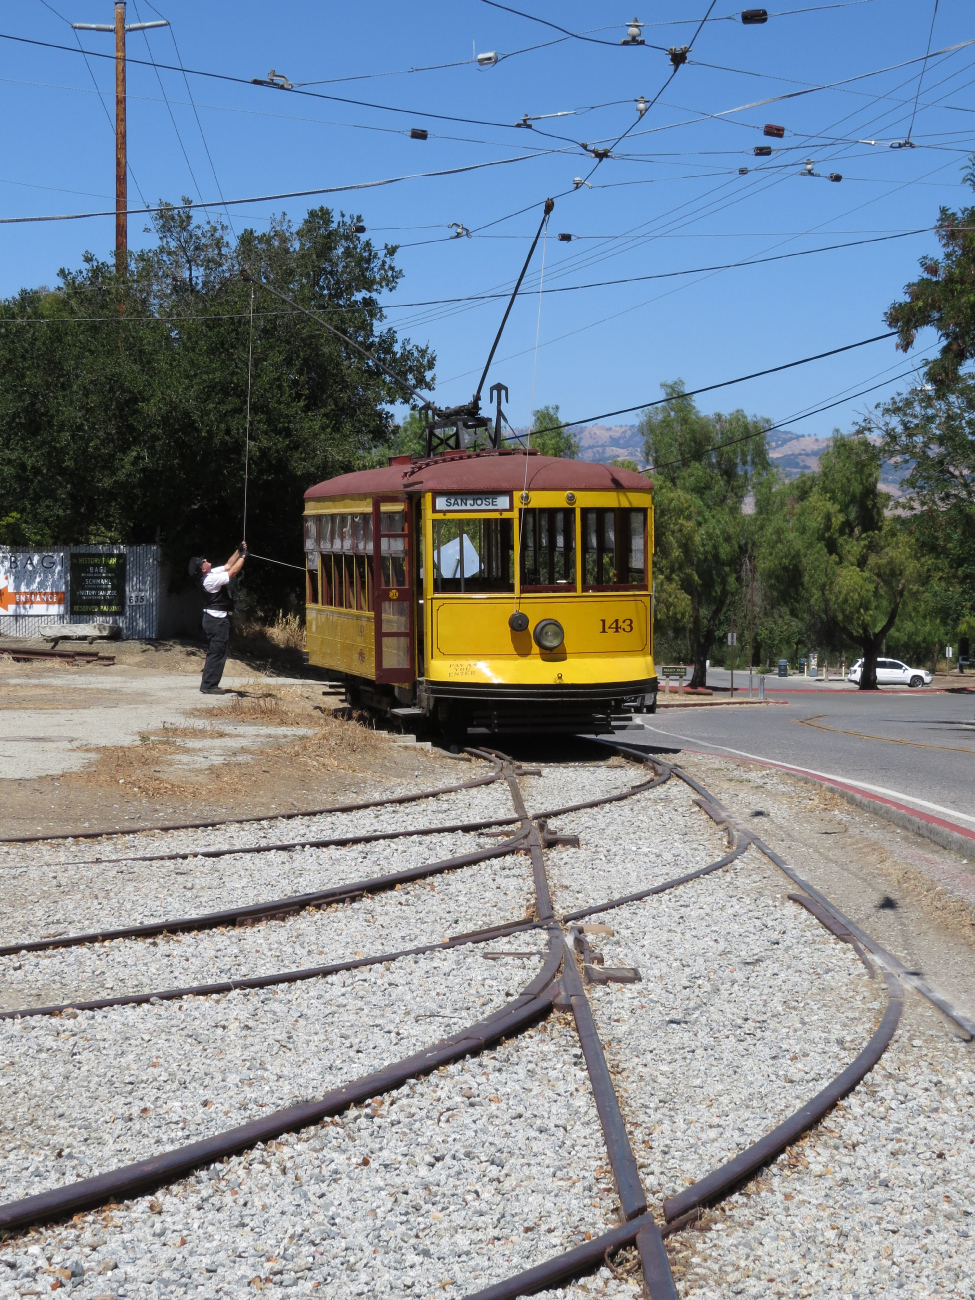 Сан-Хосе, Birney № 143; Сан-Хосе — Исторический трамвай в Kelly Park — линии и инфраструктура